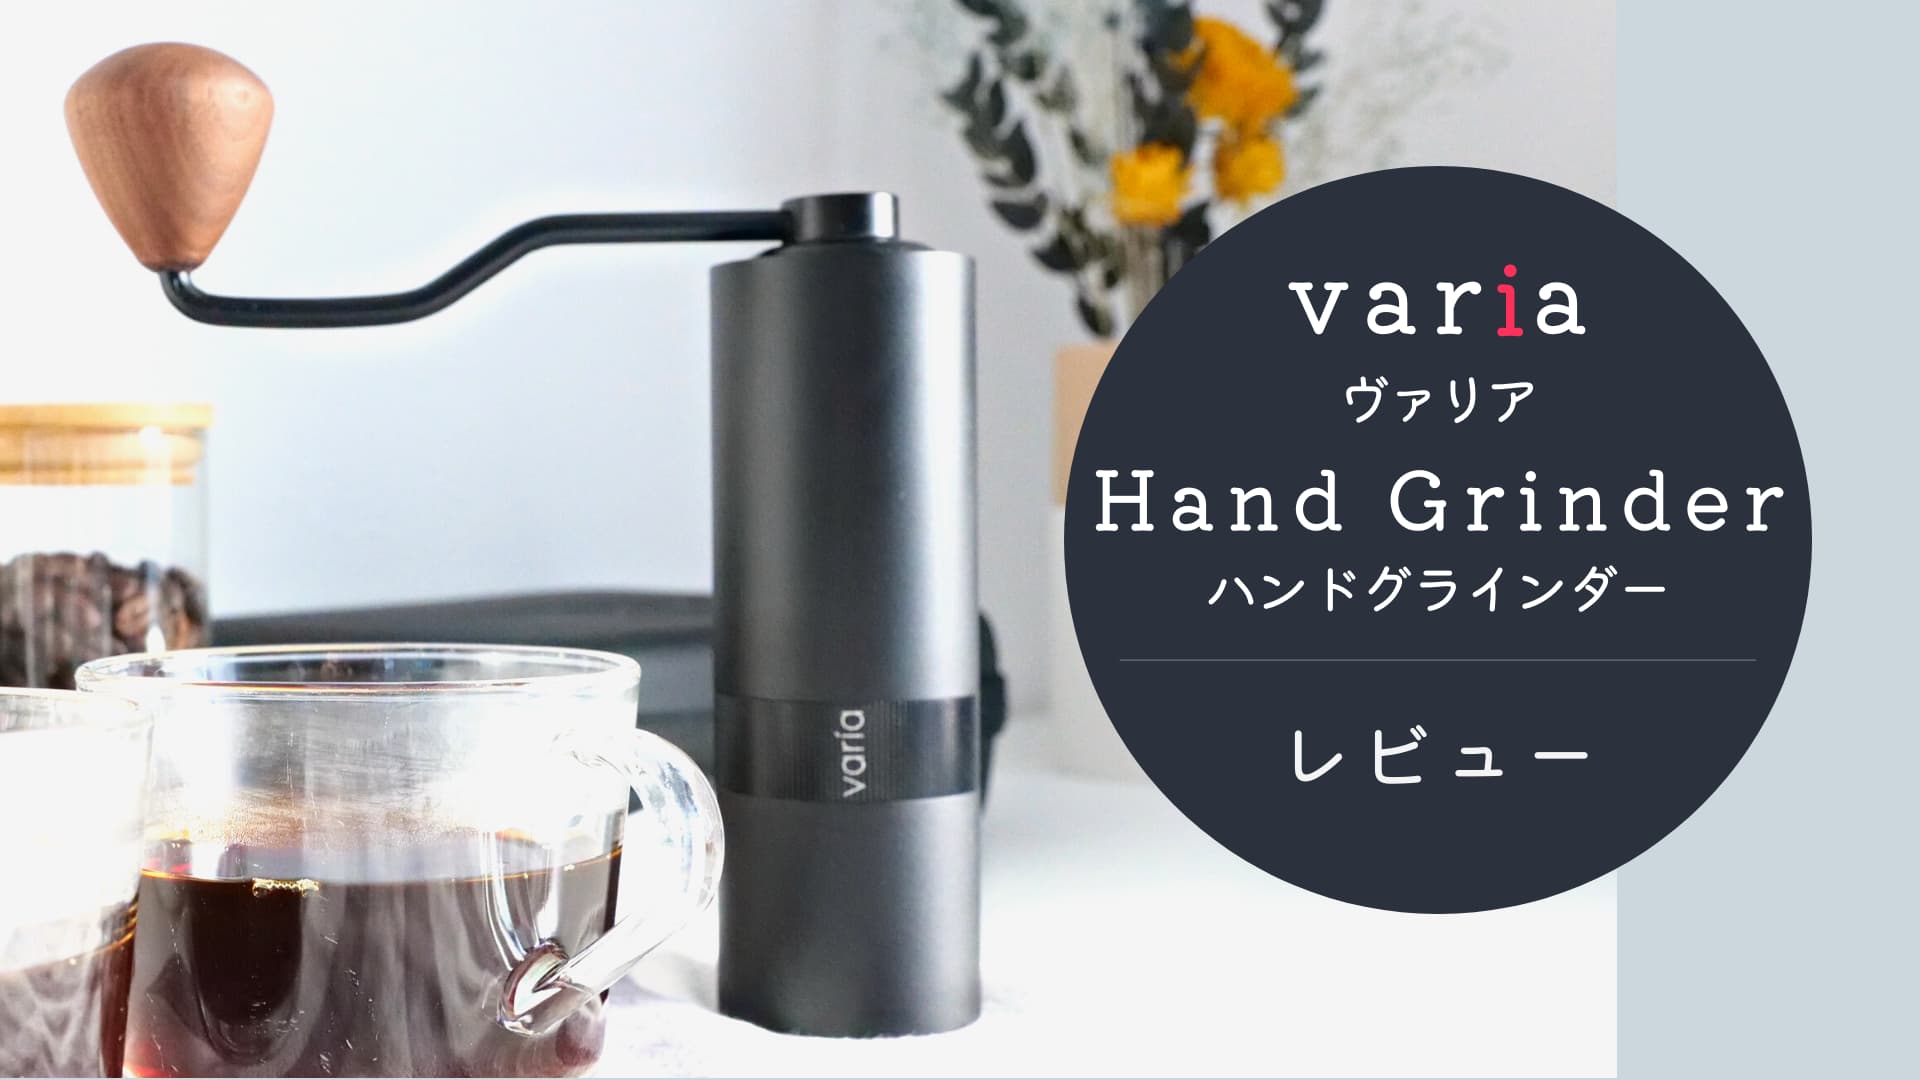 【レビュー】日本初上陸のコーヒーグラインダー「Varia Hand Grinder」が想像以上に良かった